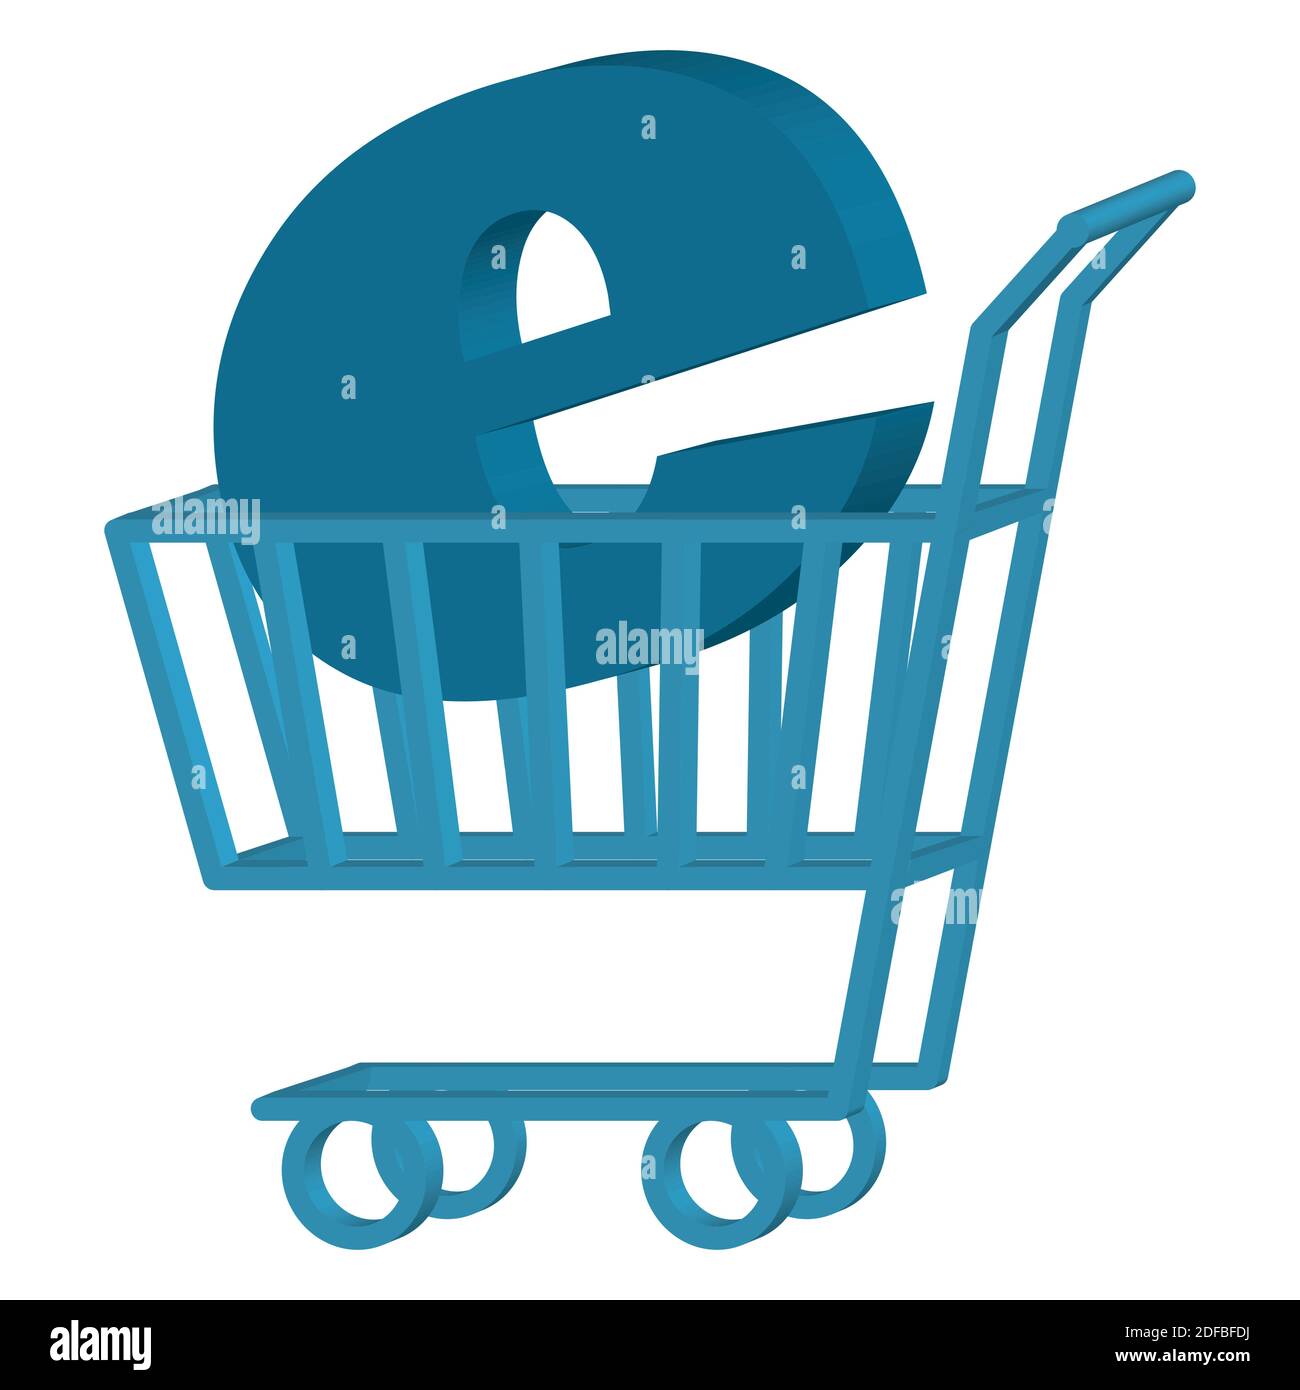 Carrello di shopping che porta la lettera e. Concetto di e-commerce. Illustrazione vettoriale. Illustrazione Vettoriale